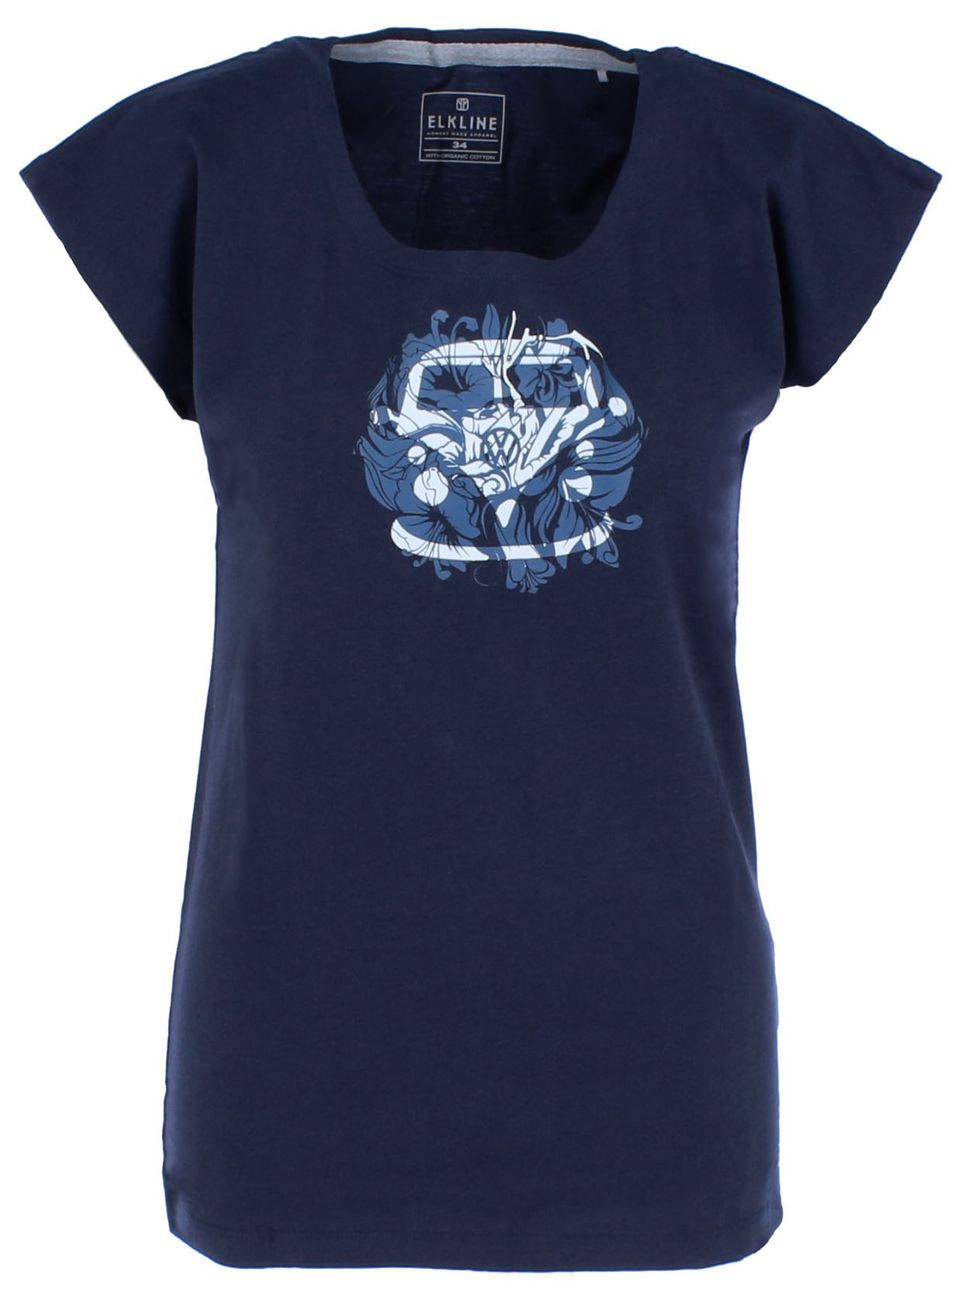 ELKLINE SHIMMER Damen Bulli T-Shirt aus Bio-Baumwolle und TENCEL Lyocell - Elkline - SAGATOO - 4051533613751